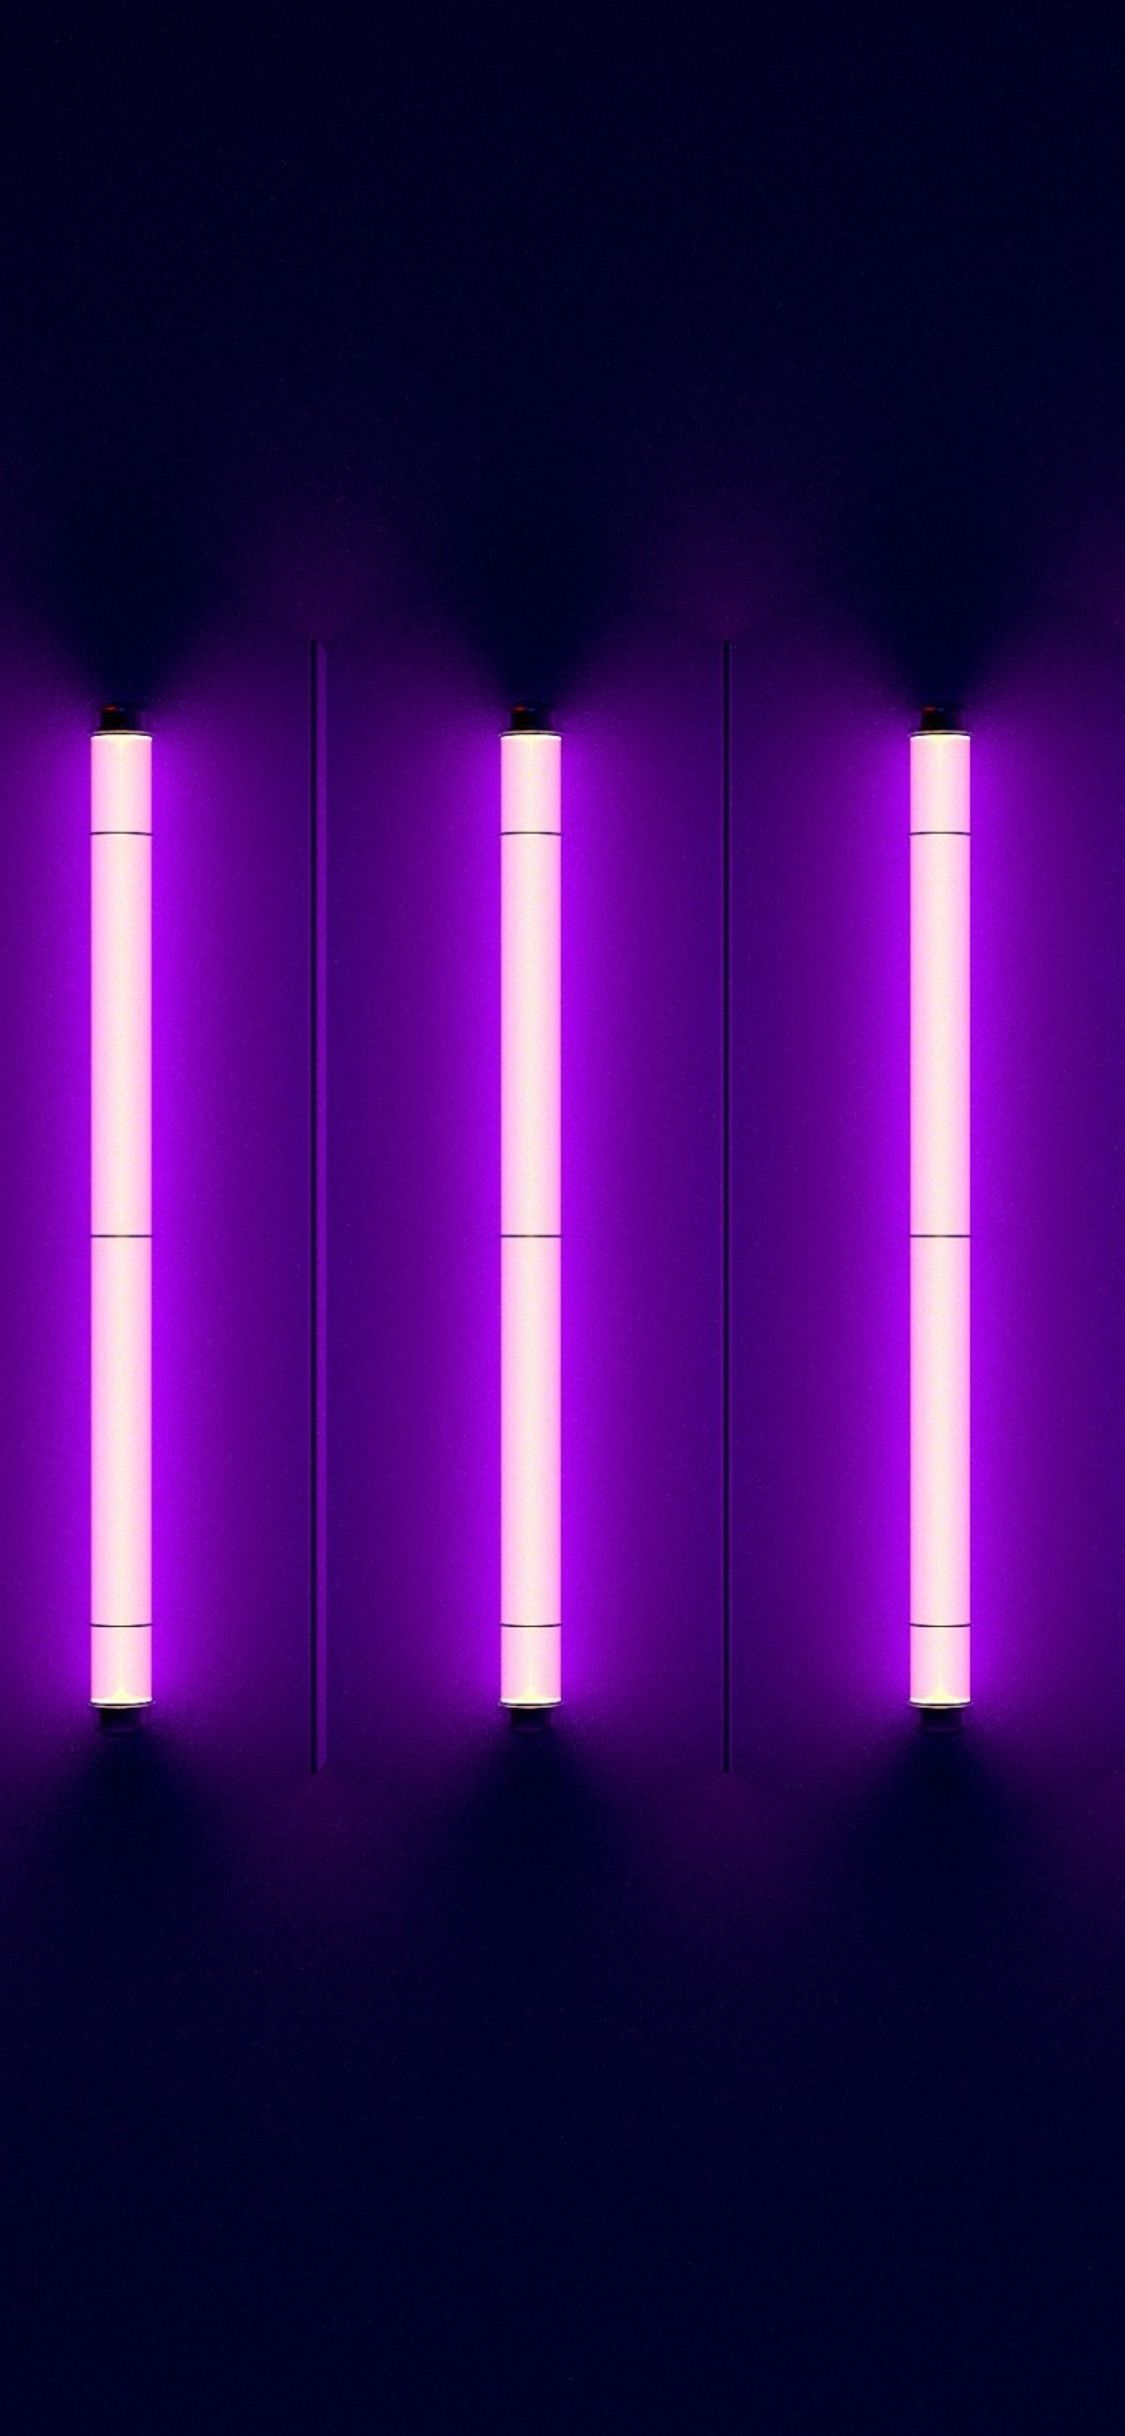 A purple light is shining on the wall - Neon purple, light purple